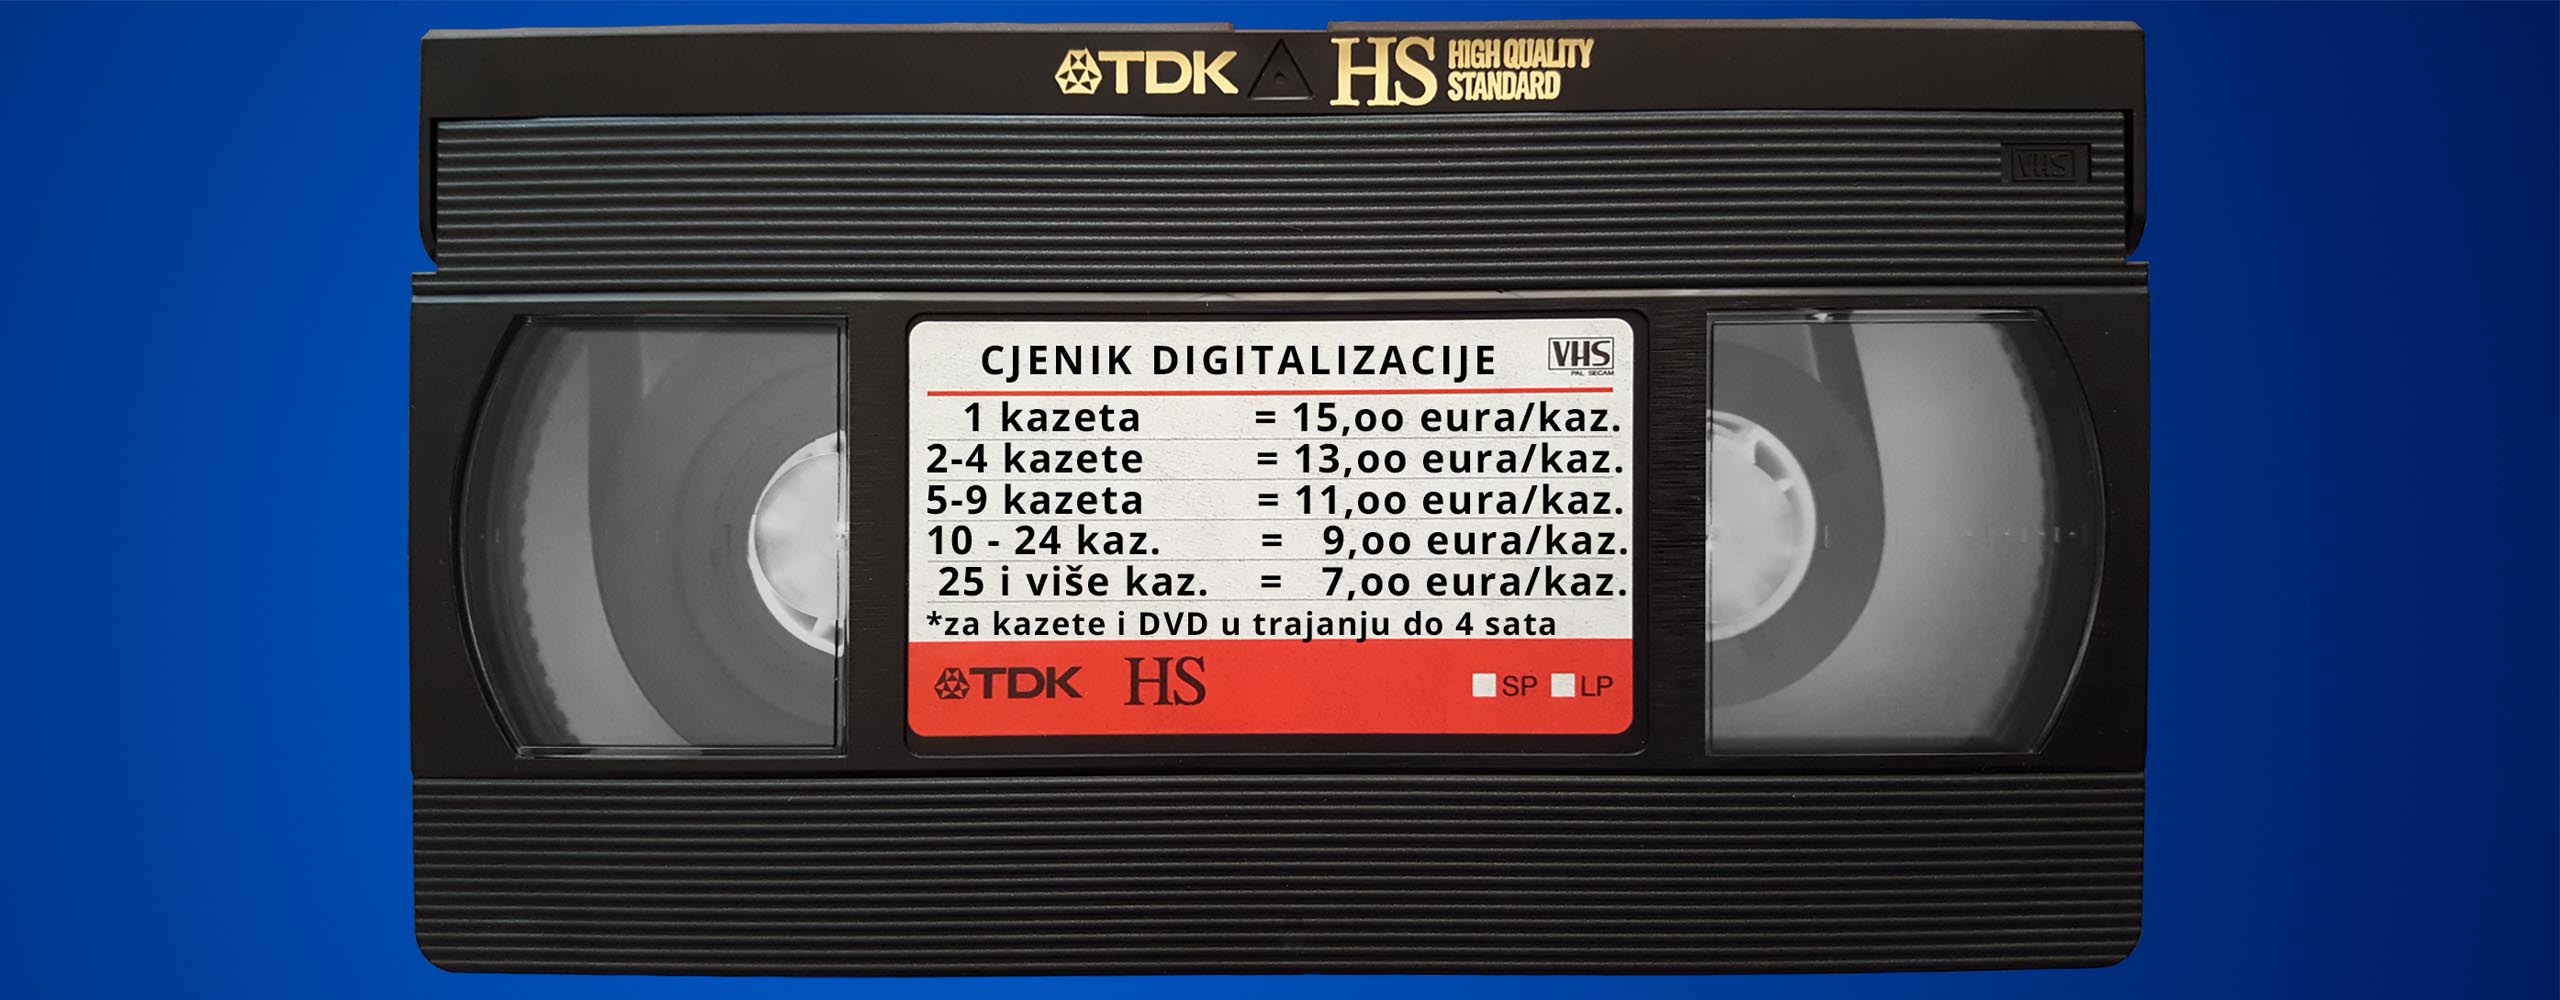 Digitalizacija videokaseta i DVD-a